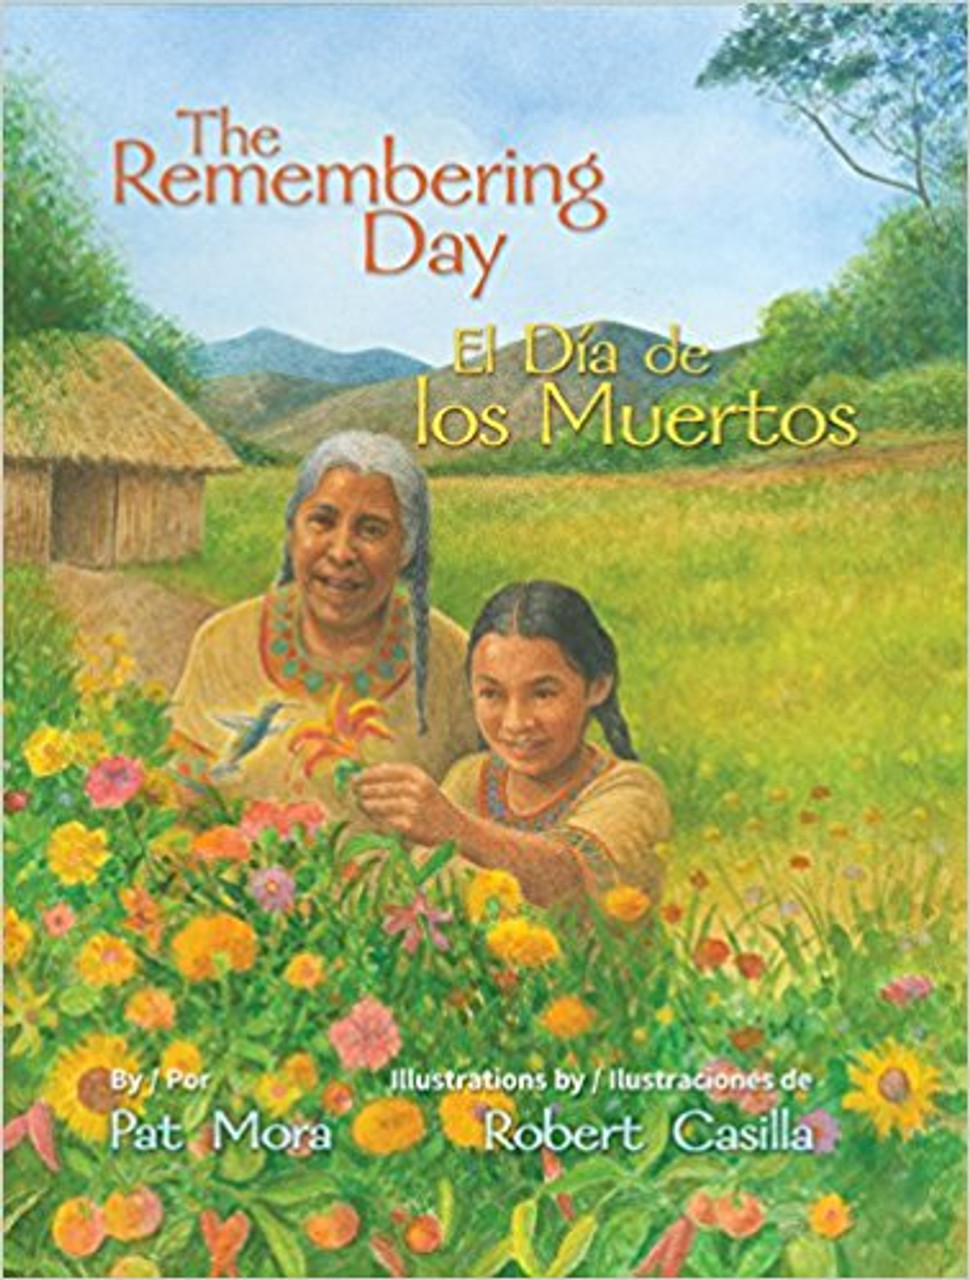 The Remembering Day / El día de los muertos by Pat Mora